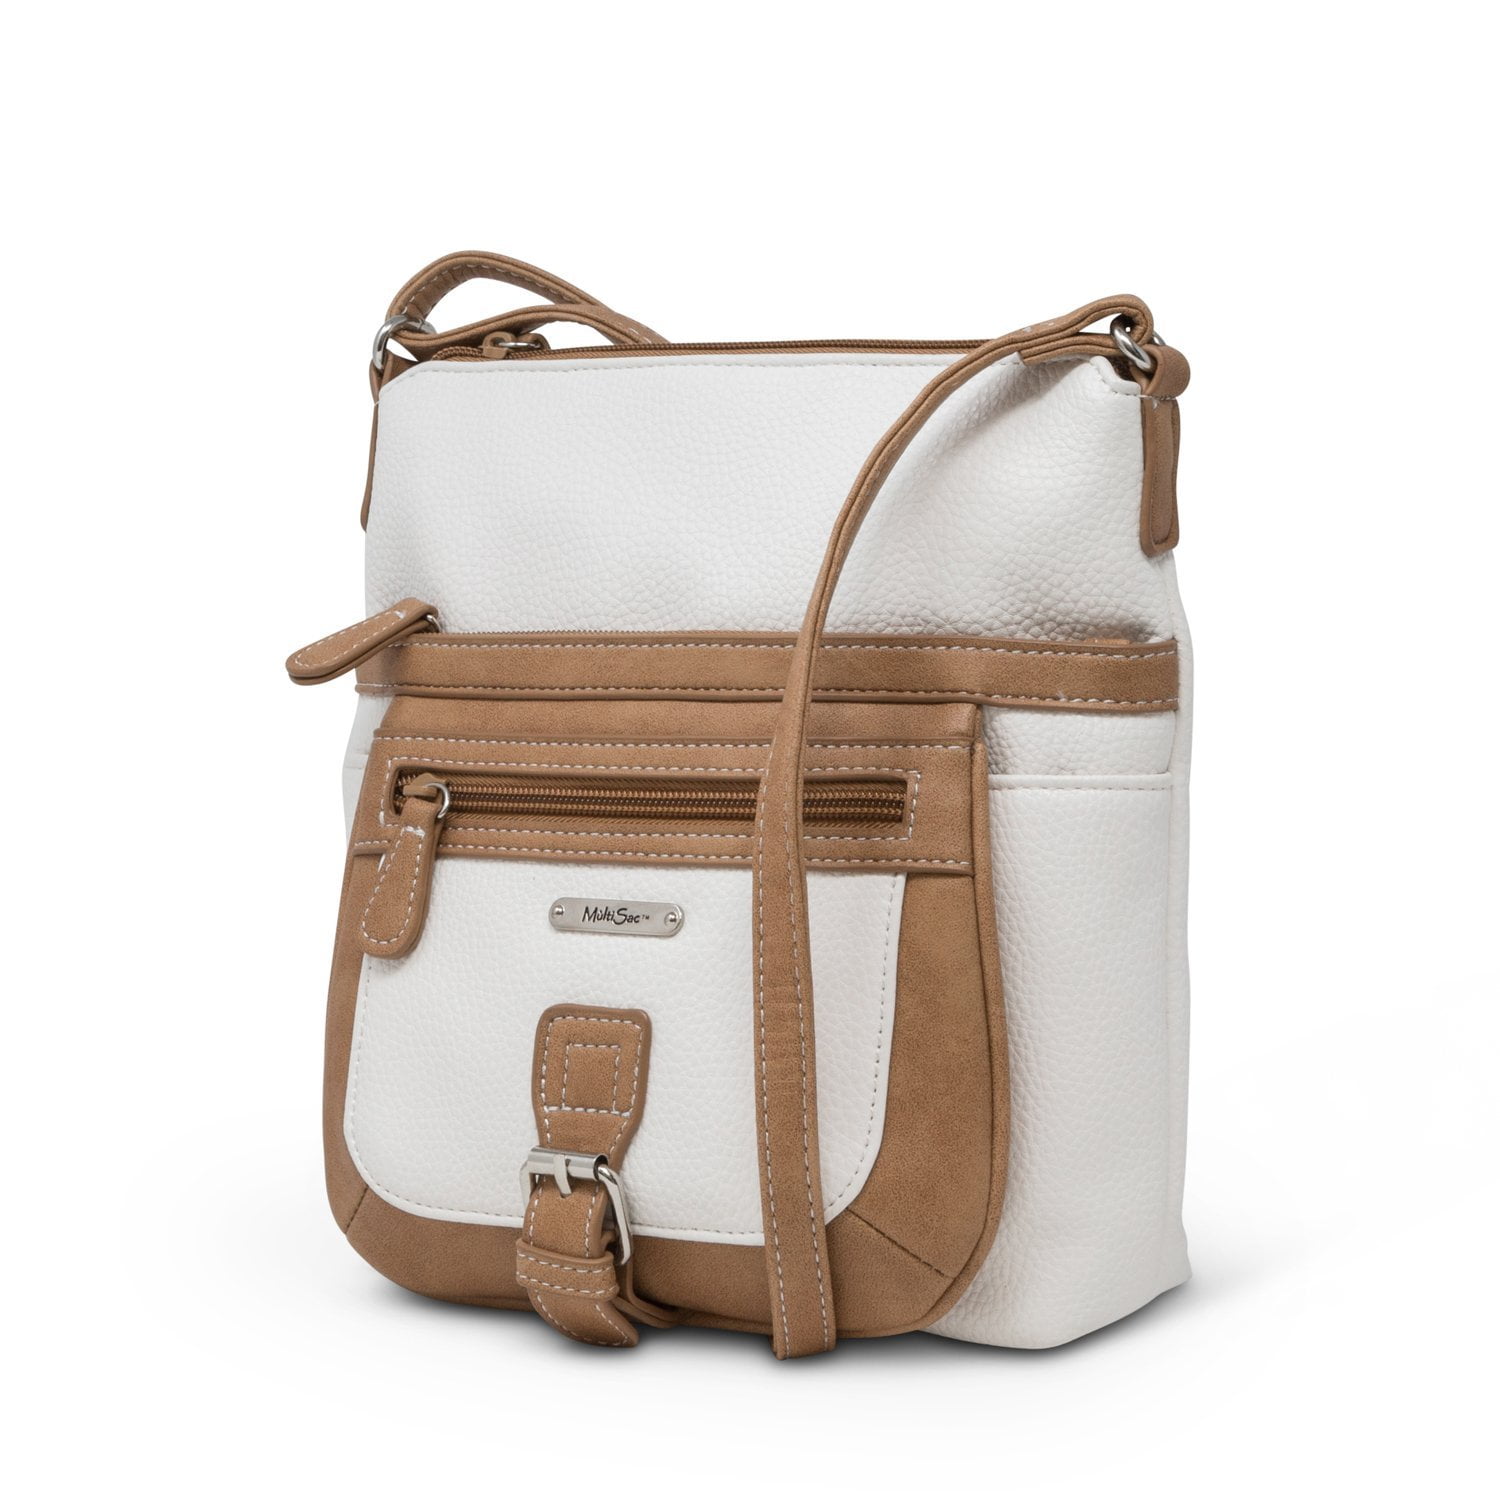 MultiSac Flare Shoulder Bag  Shoulder bag, Bags, Crossbody bag